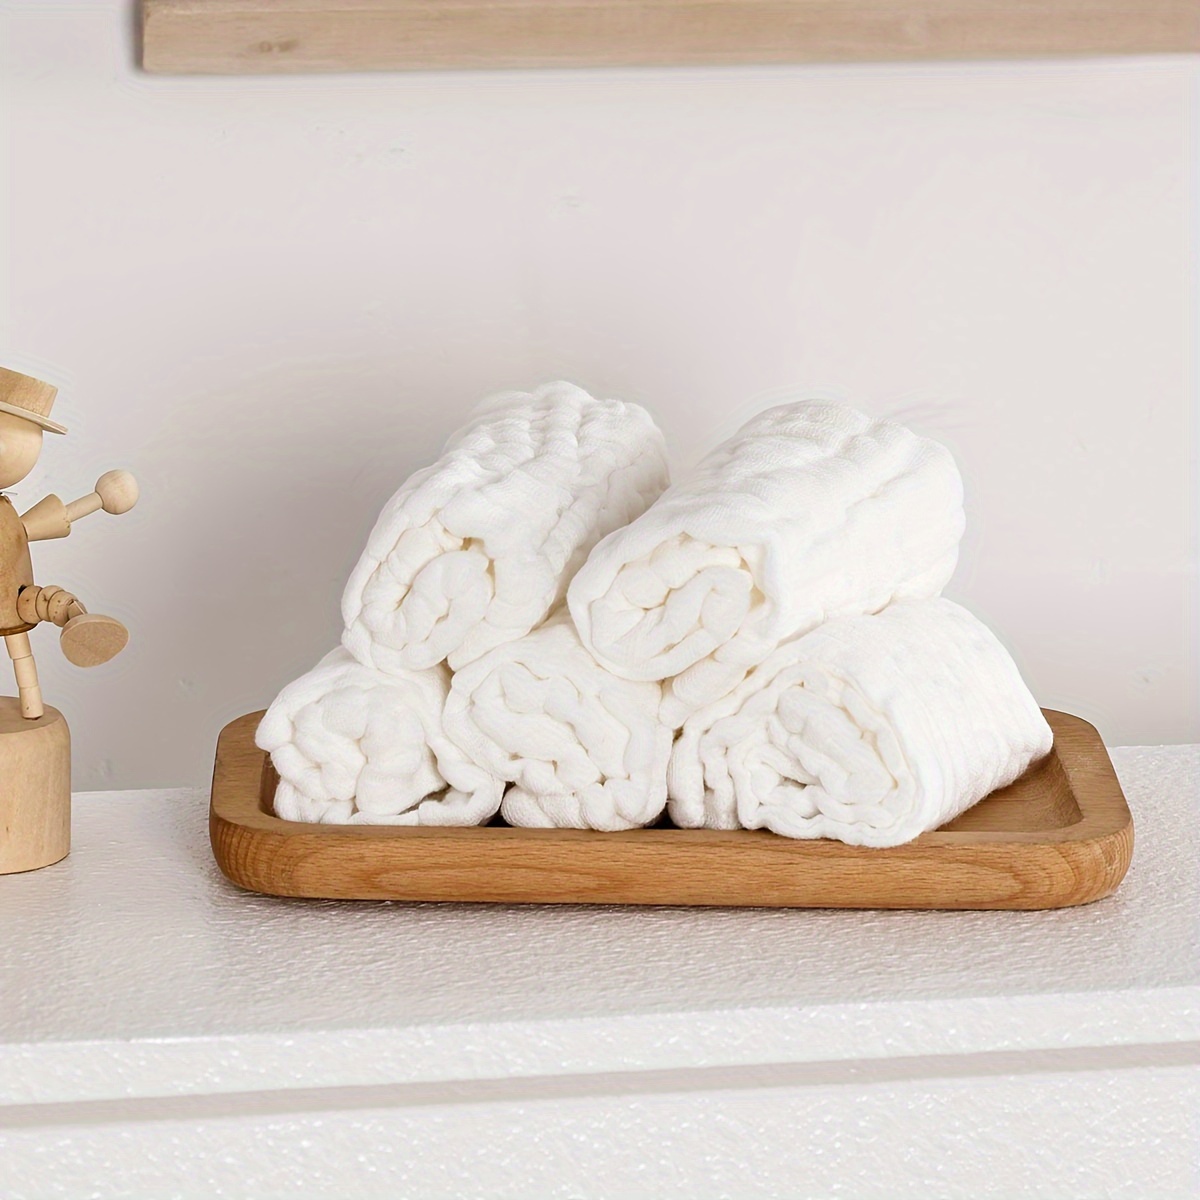 

5pcs 100% Cotton Square Face Towels, Muslin Gauze Washcloths